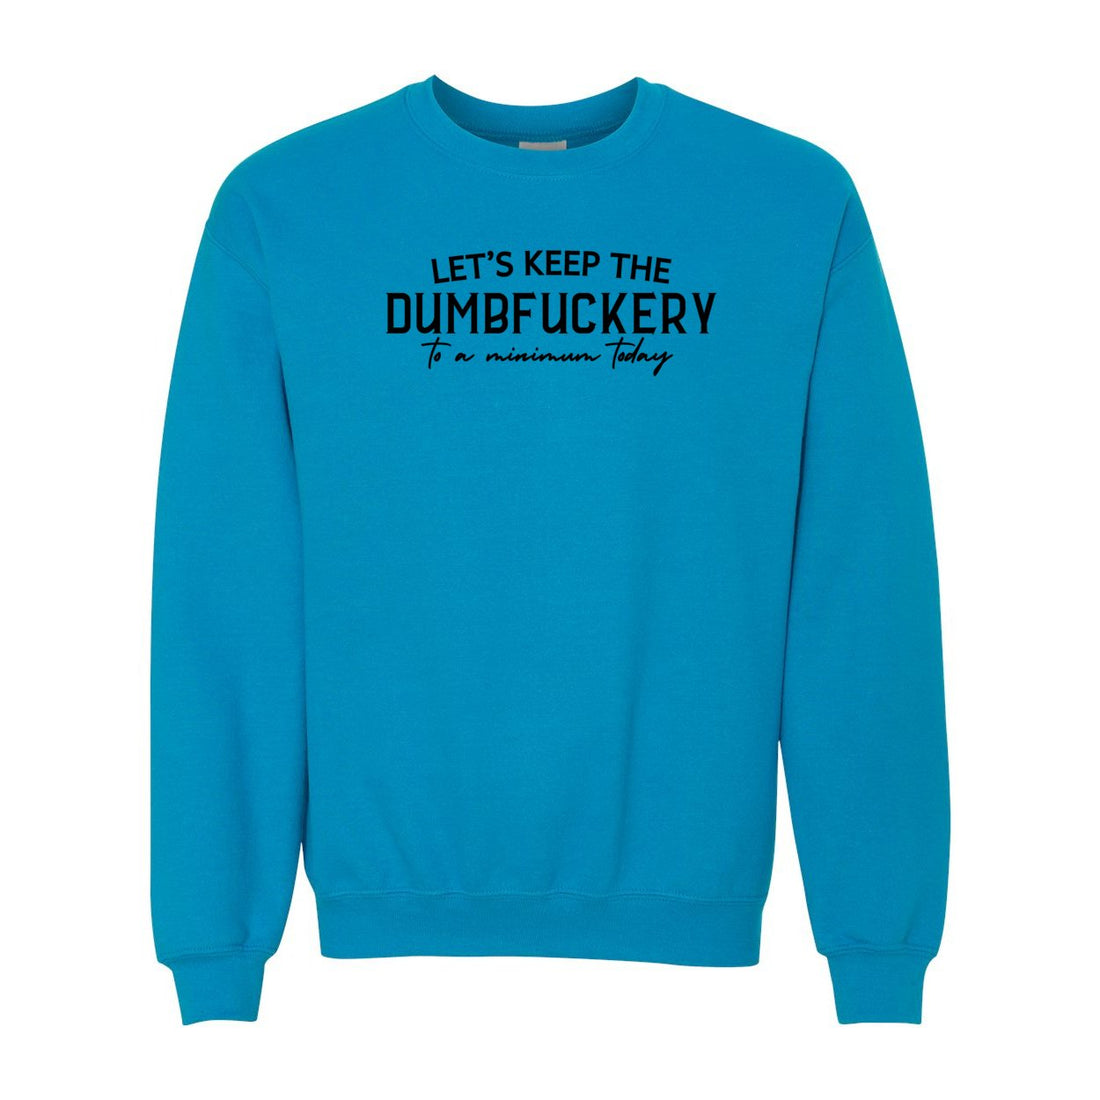 Dumbfuckery Sweatshirt - Sweaters/Hoodies - Positively Sassy - Dumbfuckery Sweatshirt